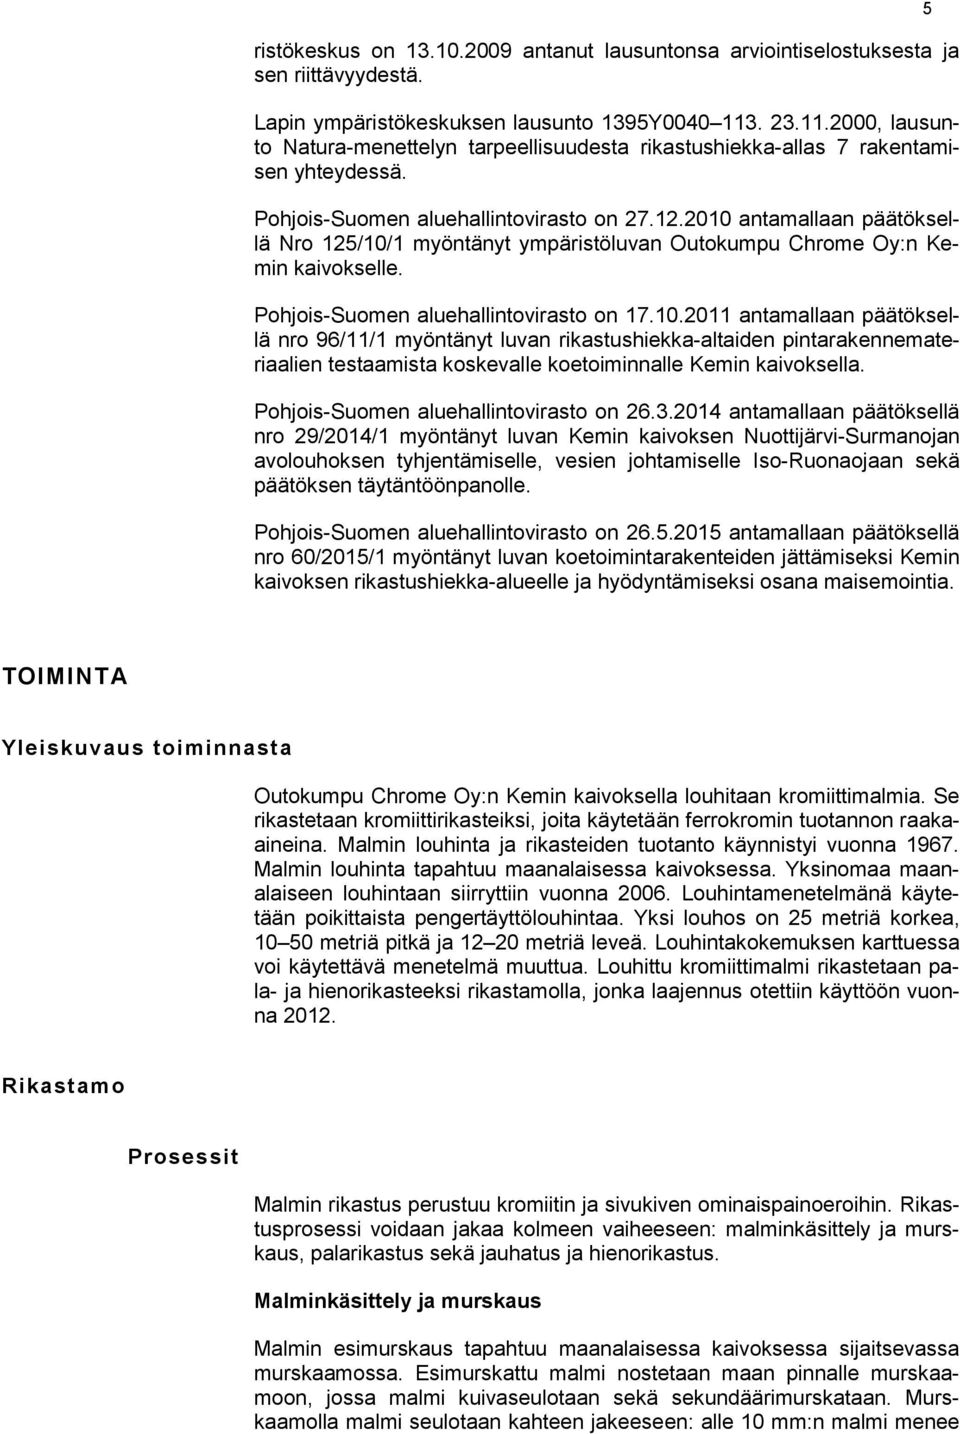 2010 antamallaan päätöksellä Nro 125/10/1 myöntänyt ympäristöluvan Outokumpu Chrome Oy:n Kemin kaivokselle. Pohjois-Suomen aluehallintovirasto on 17.10.2011 antamallaan päätöksellä nro 96/11/1 myöntänyt luvan rikastushiekka-altaiden pintarakennemateriaalien testaamista koskevalle koetoiminnalle Kemin kaivoksella.